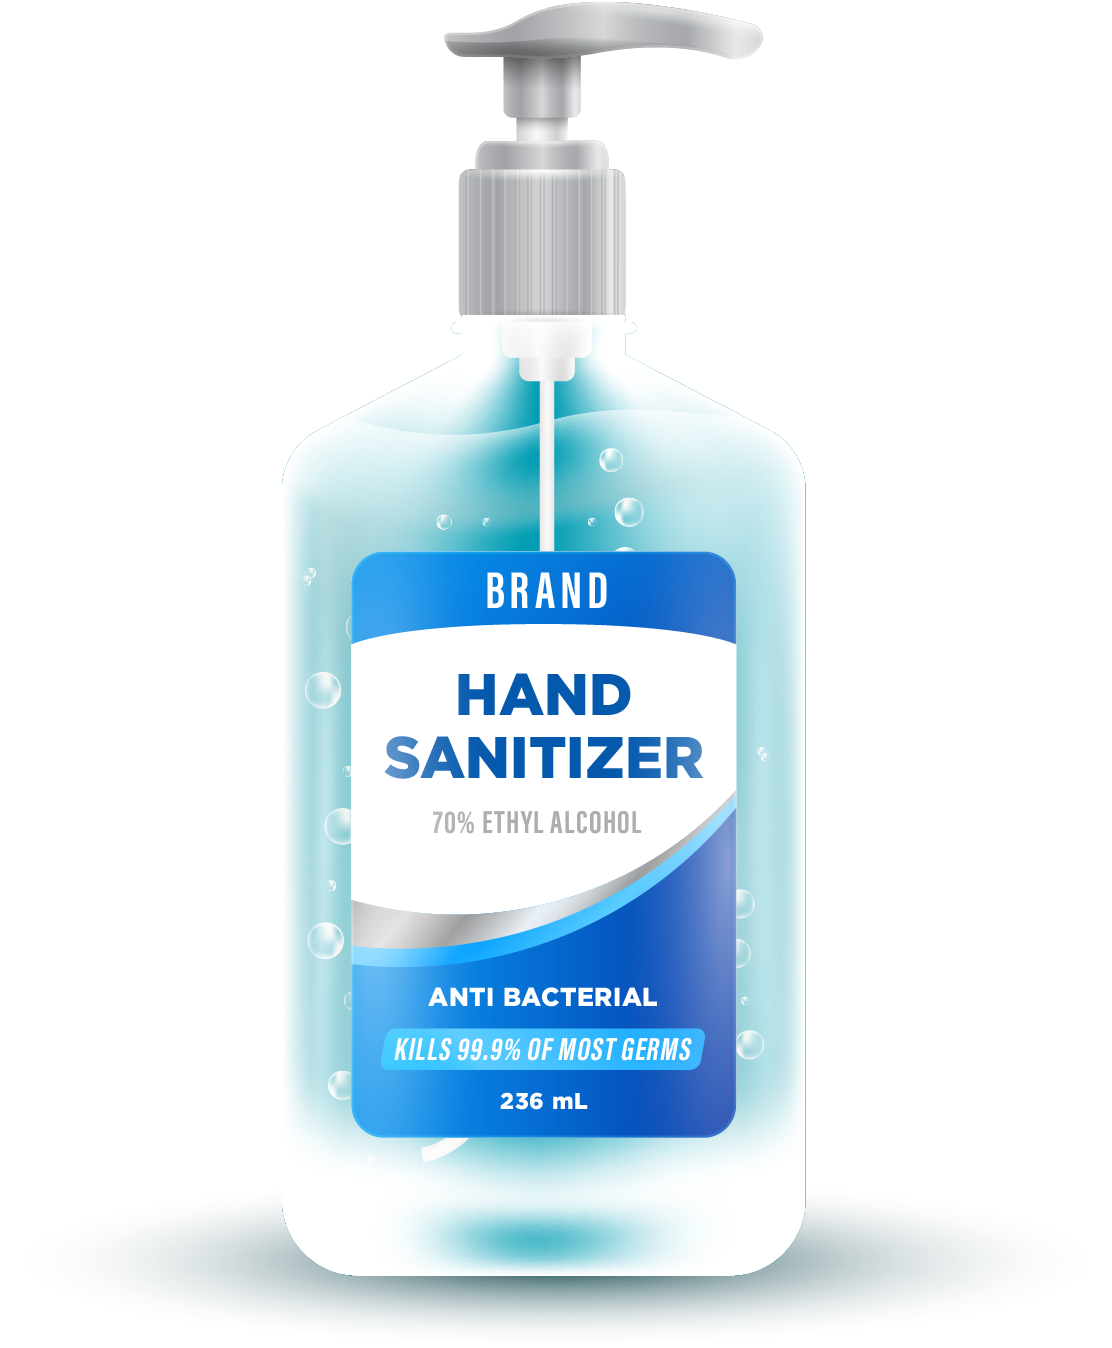 Hand Sanitizer Bottle Label Design